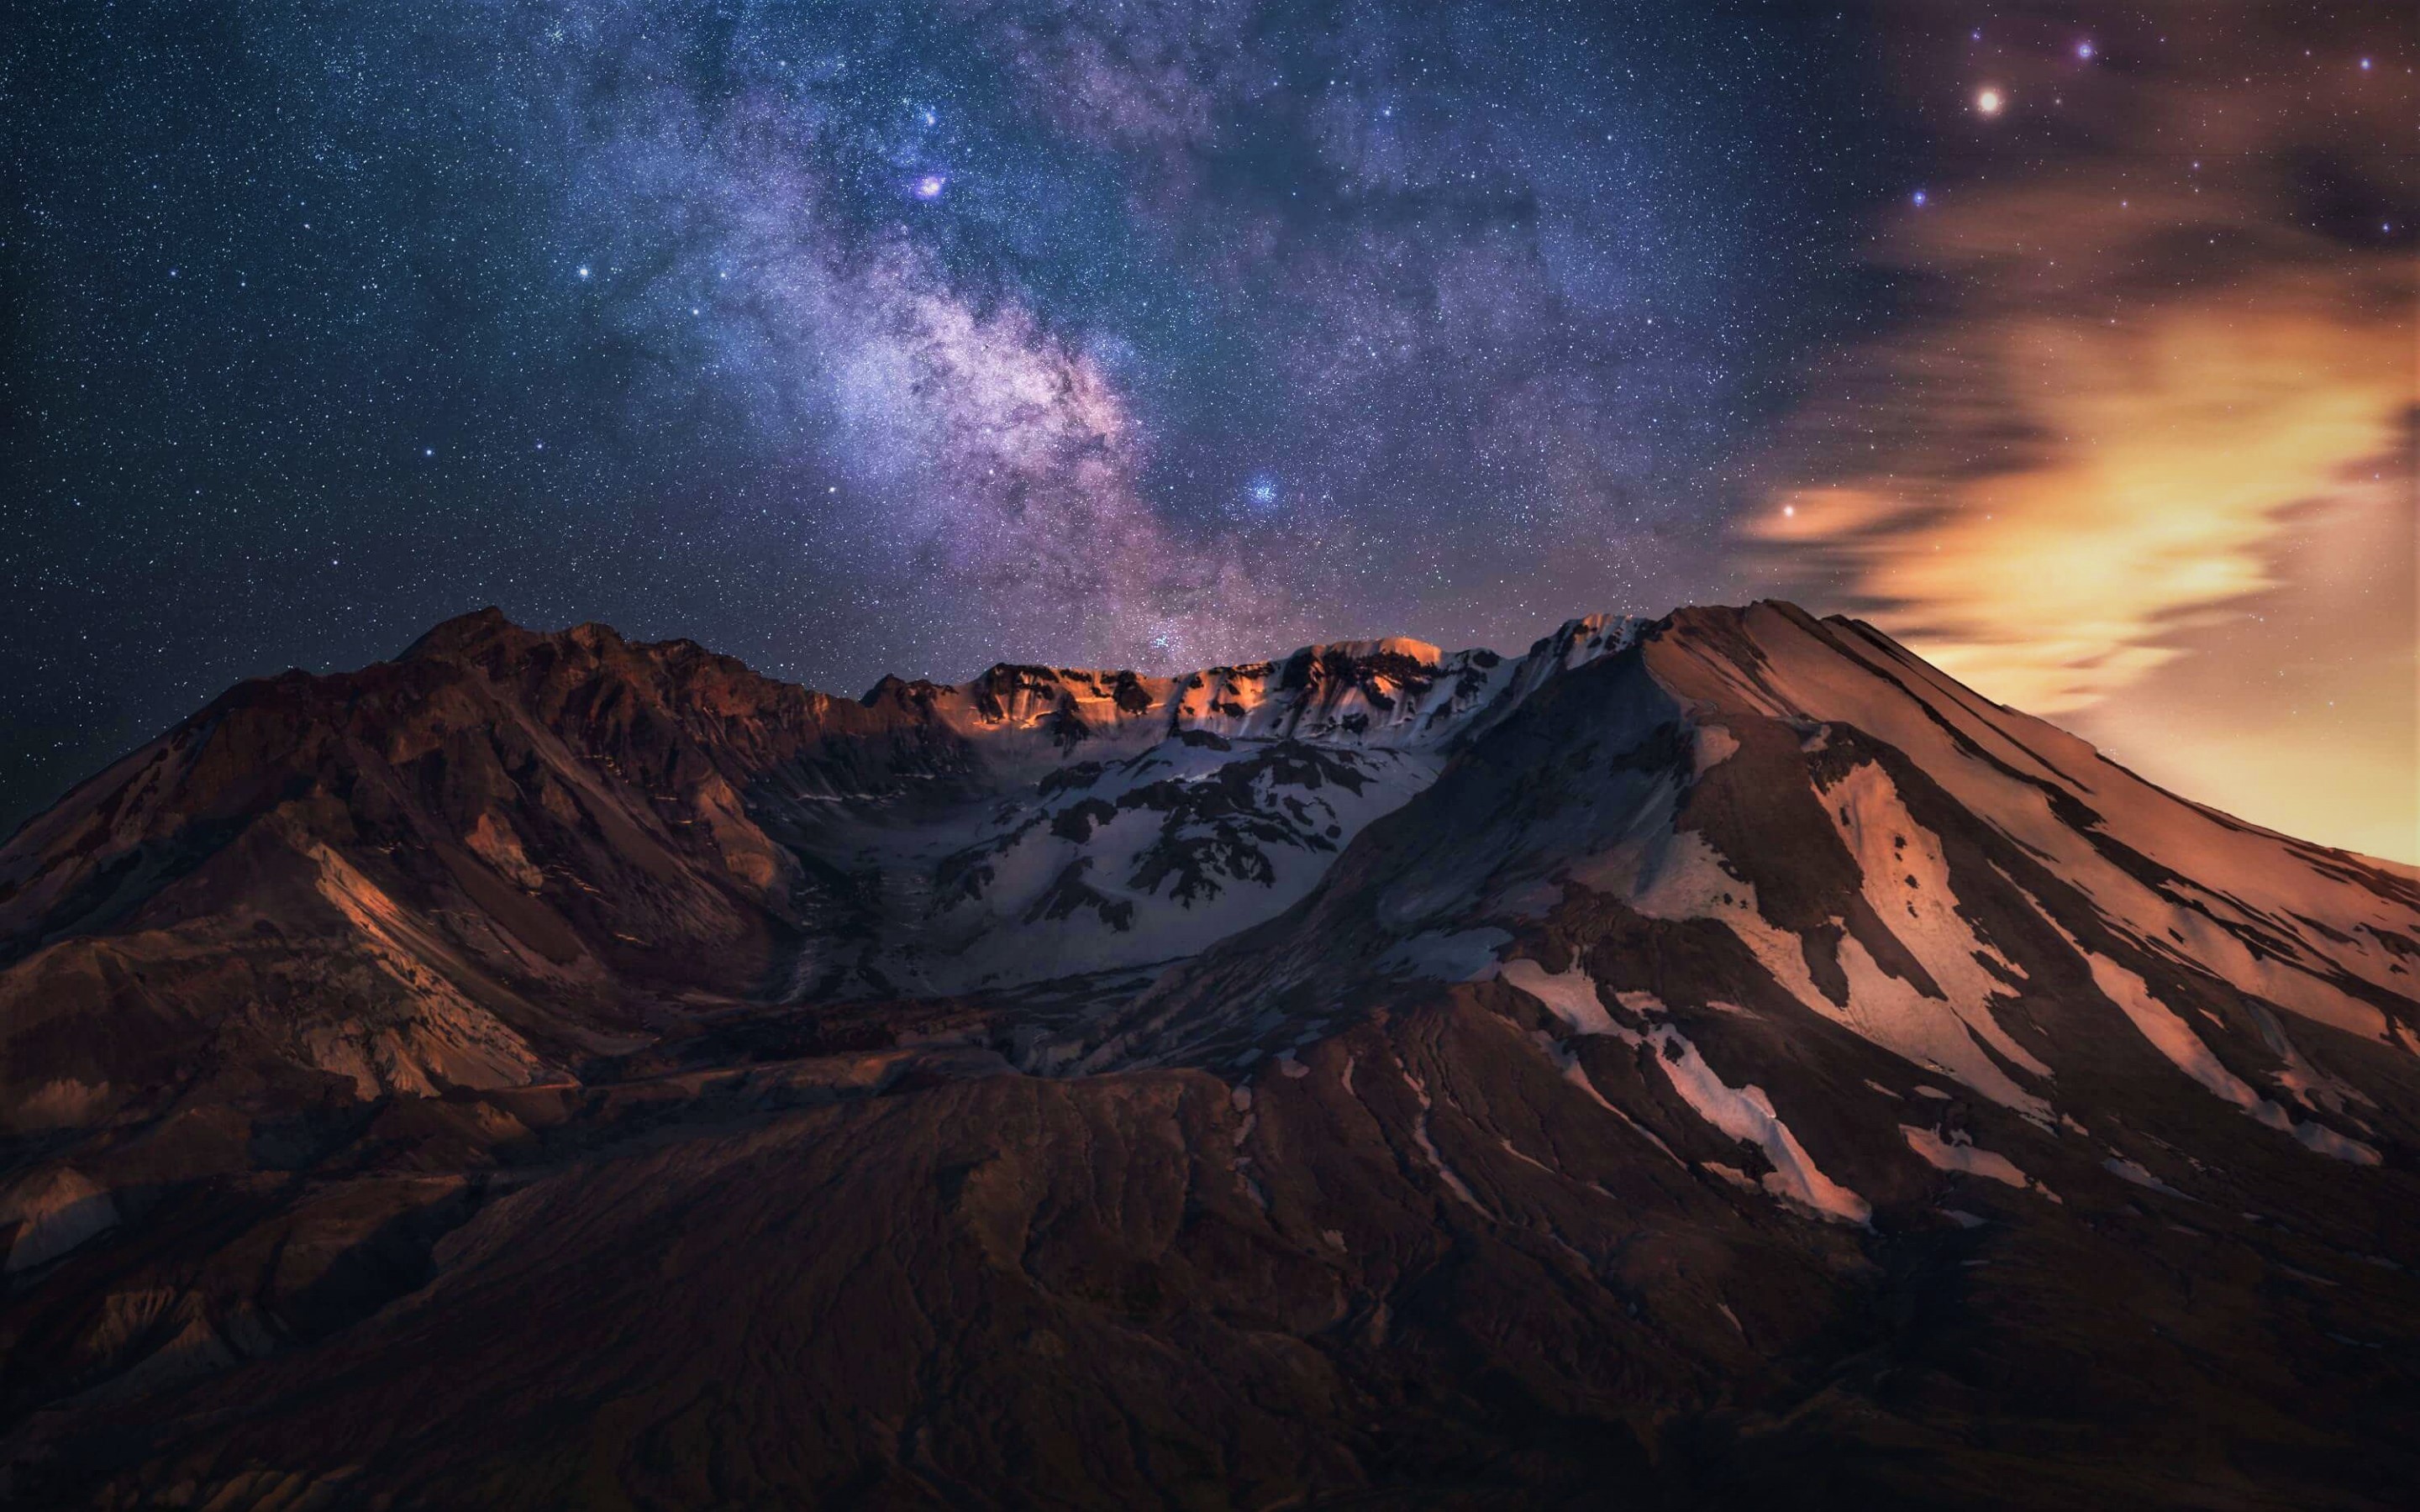 Milky Way over Mount St. Helens